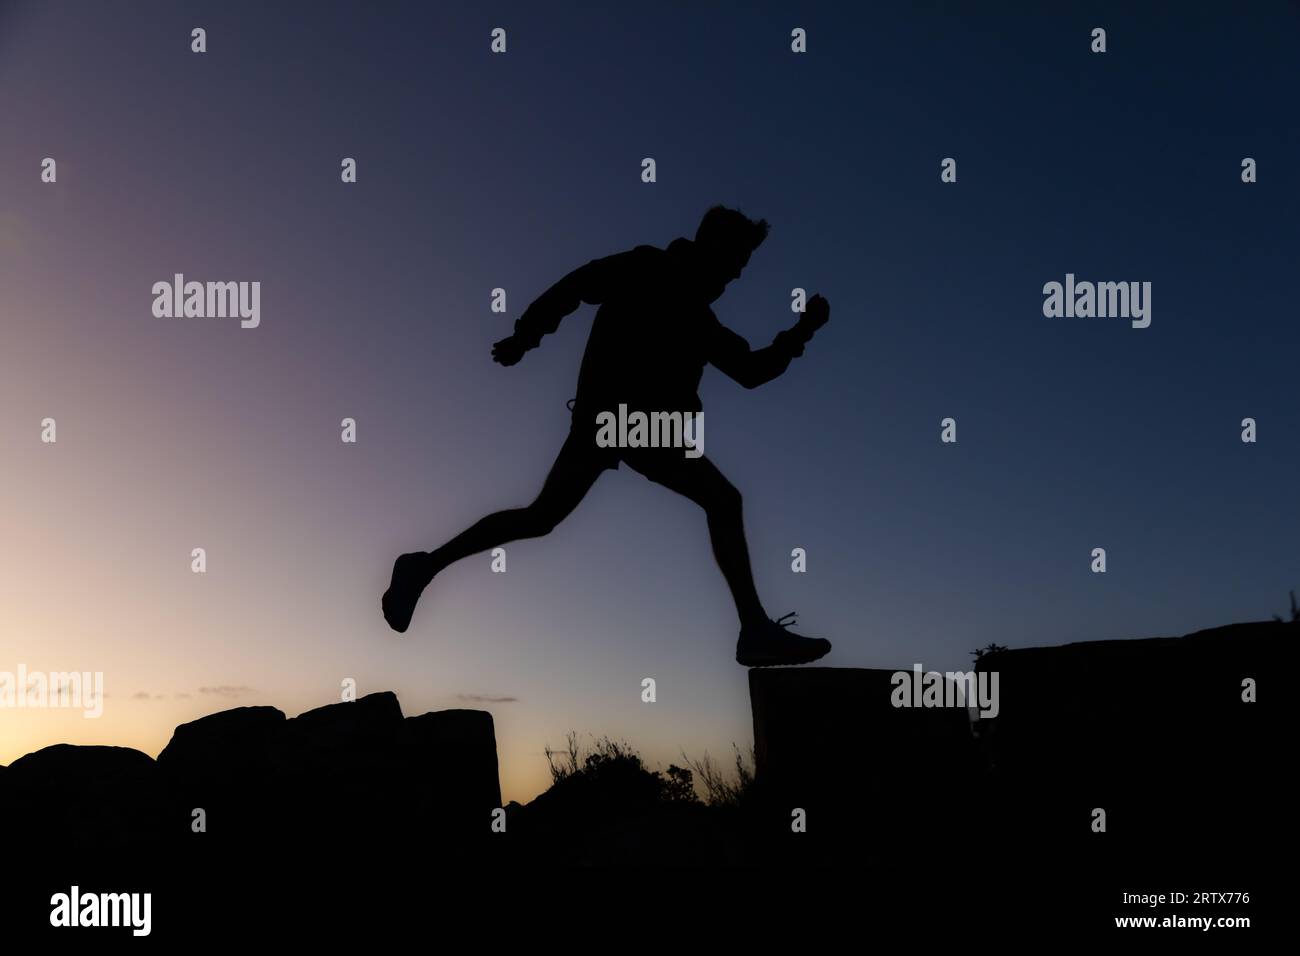 Jeune homme sur une randonnée prenant une longue foulée au lever du soleil en silhouette Banque D'Images